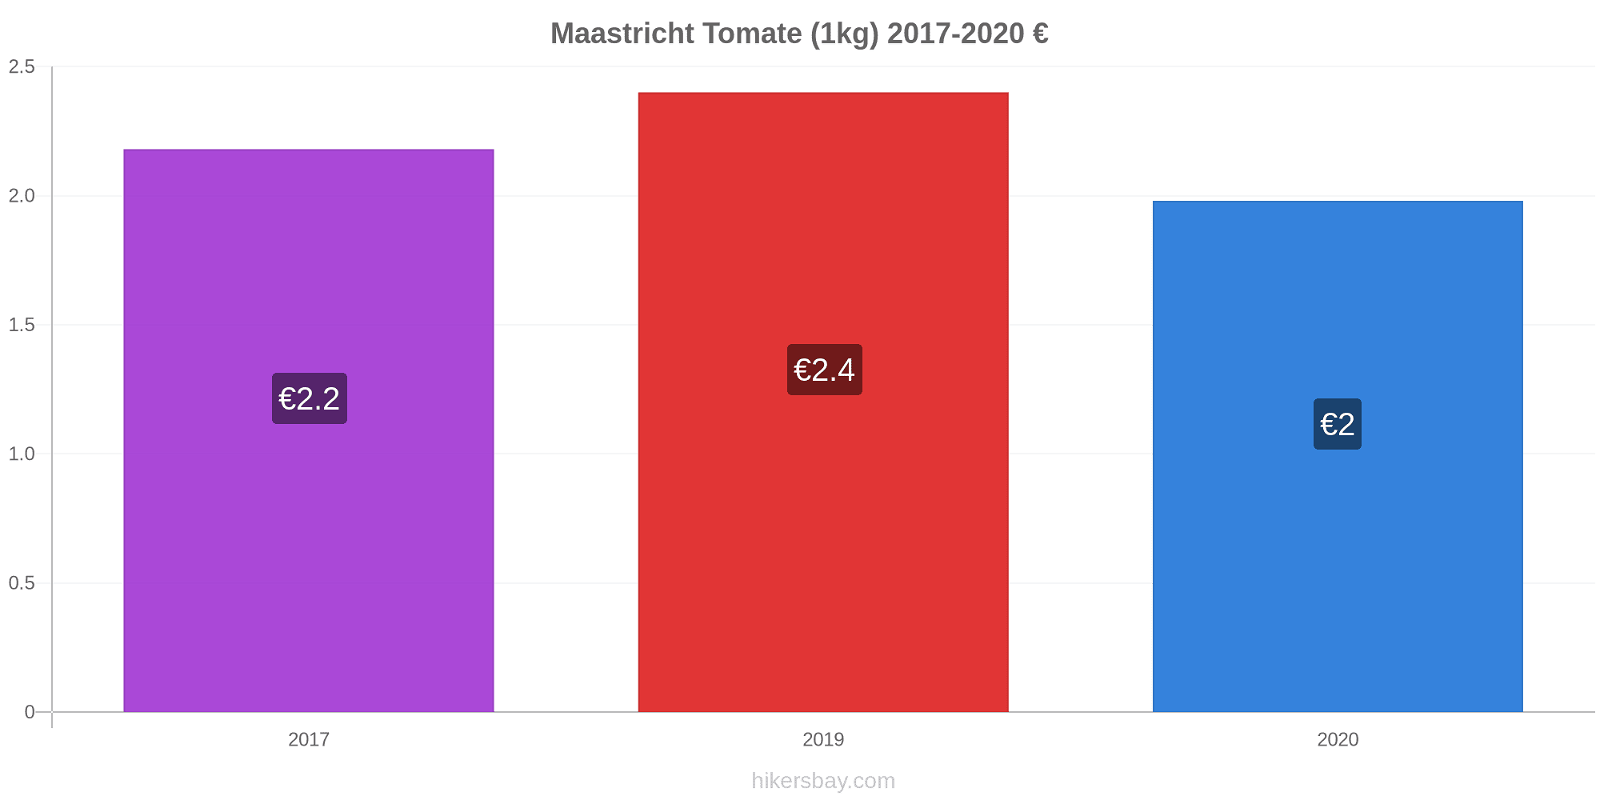 Maastricht cambios de precios Tomate (1kg) hikersbay.com